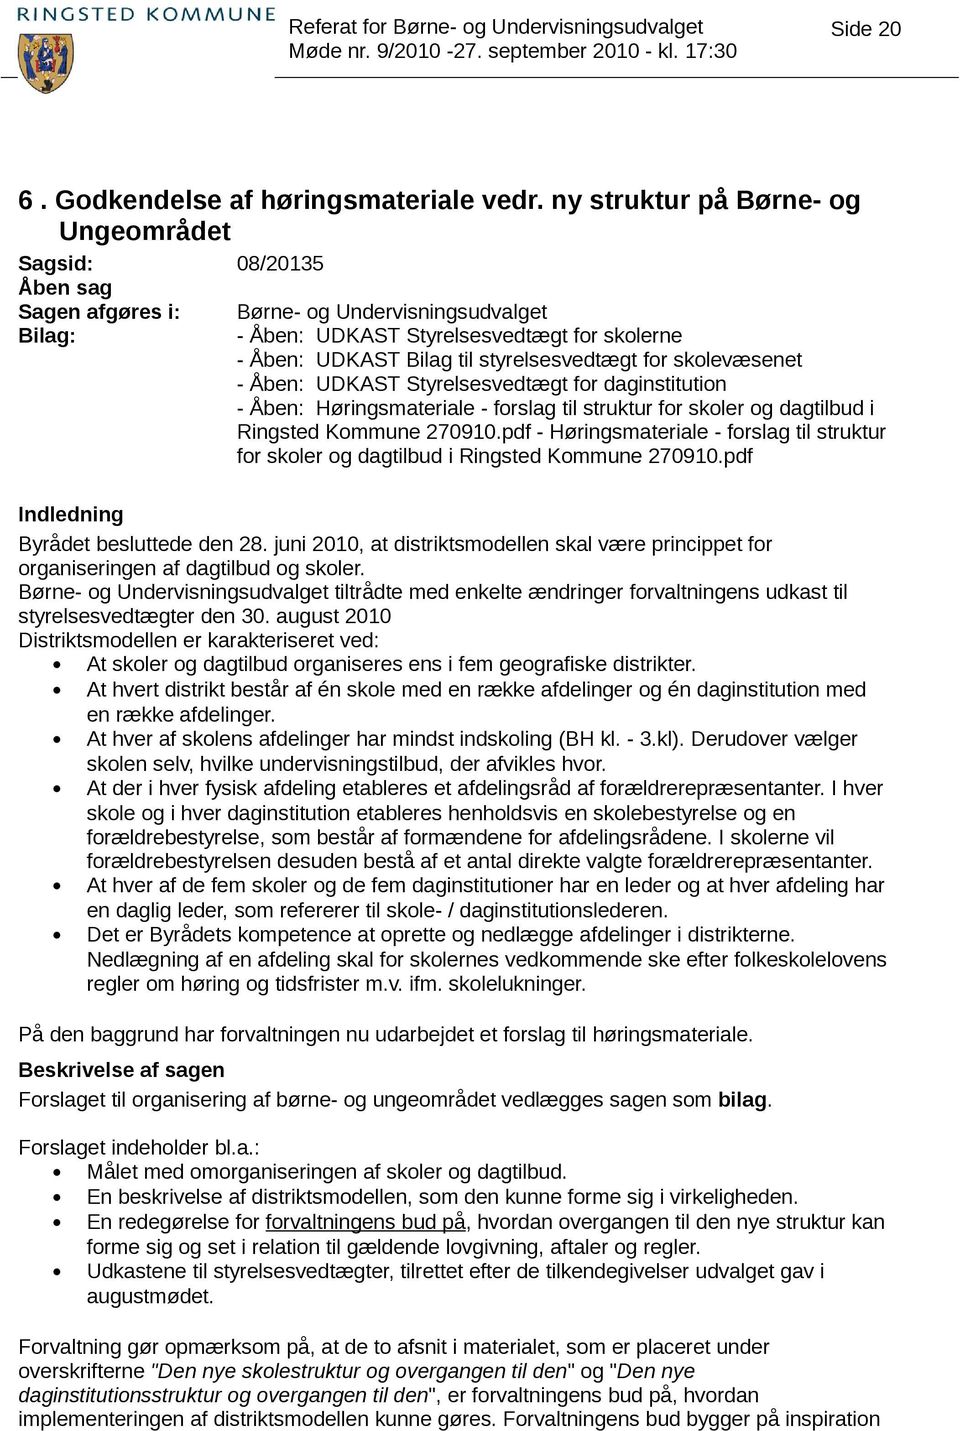 styrelsesvedtægt for skolevæsenet - Åben: UDKAST Styrelsesvedtægt for daginstitution - Åben: Høringsmateriale - forslag til struktur for skoler og dagtilbud i Ringsted Kommune 270910.